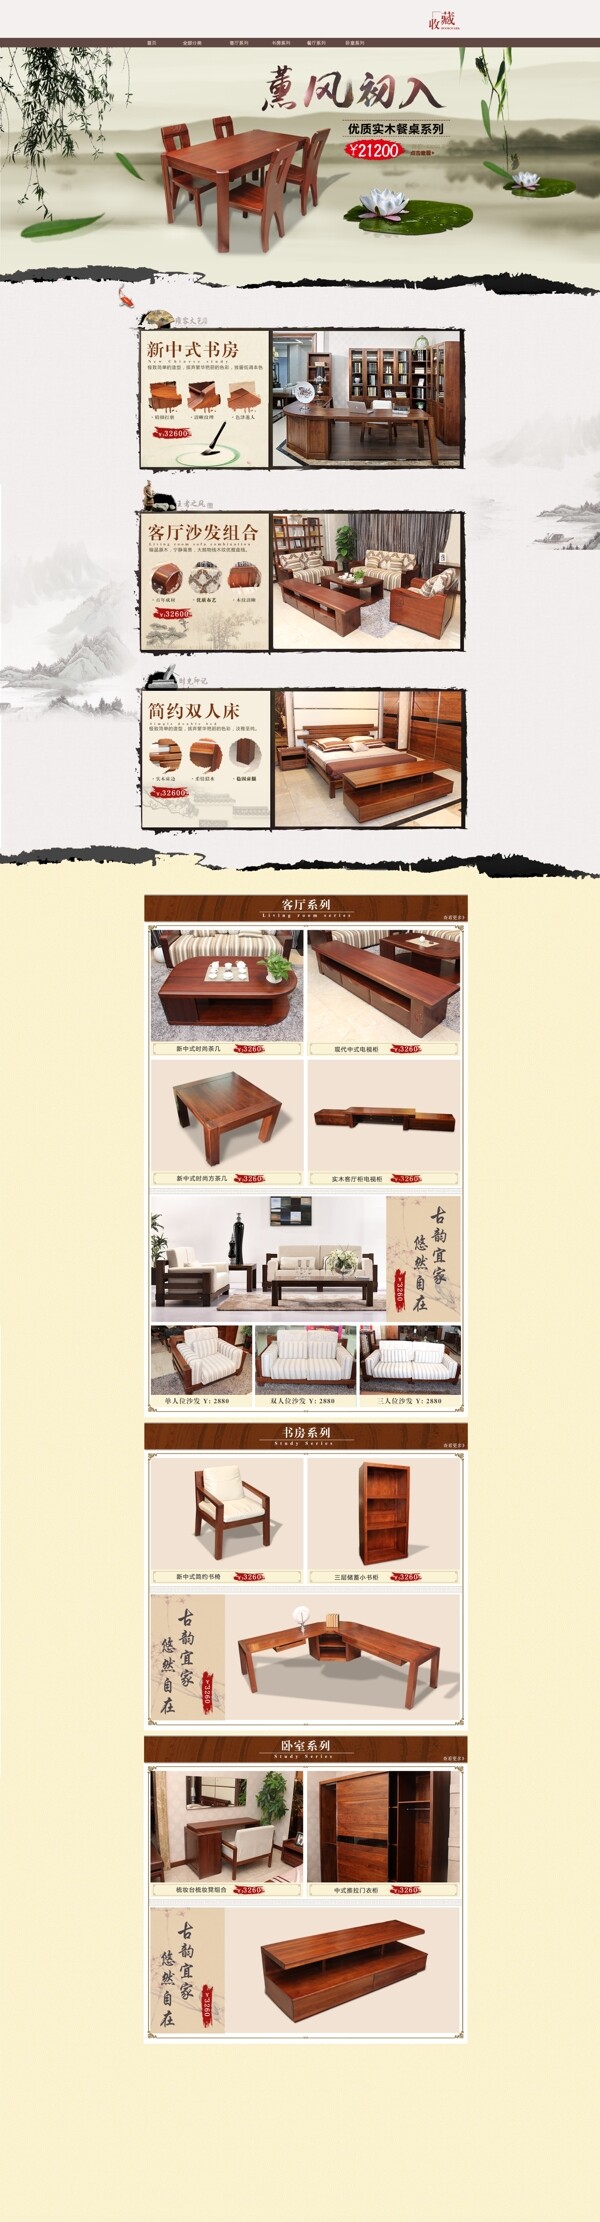 淘宝中式家具